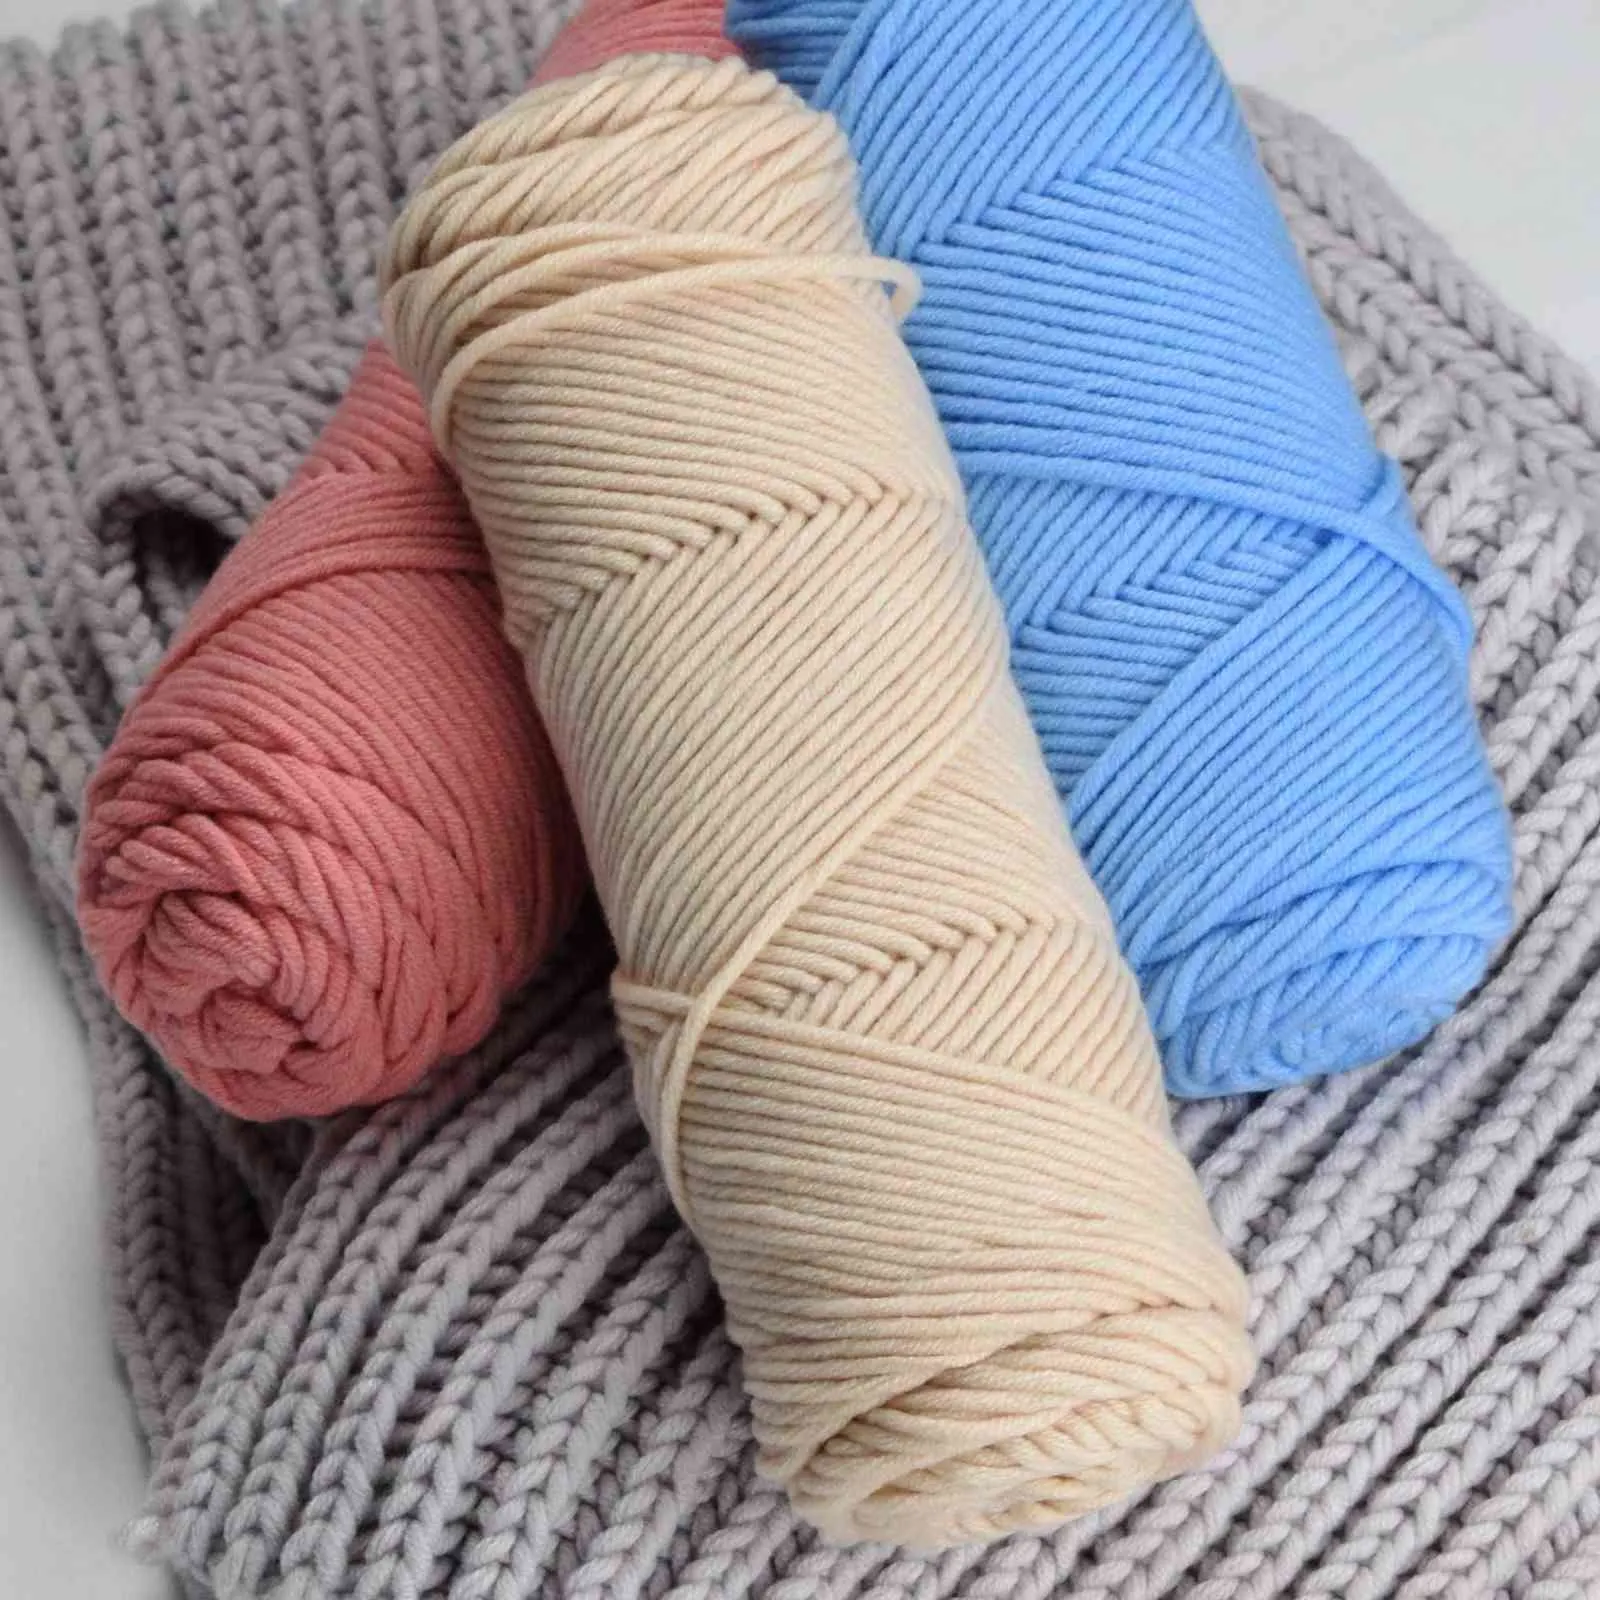 1pc 100g / Pcsチャンキー糸ウールのブレンド手編みスカーフセーターブランケット帽子柔らかい糸かぎ針編み綿のおもちゃDIY糸ニットY211129